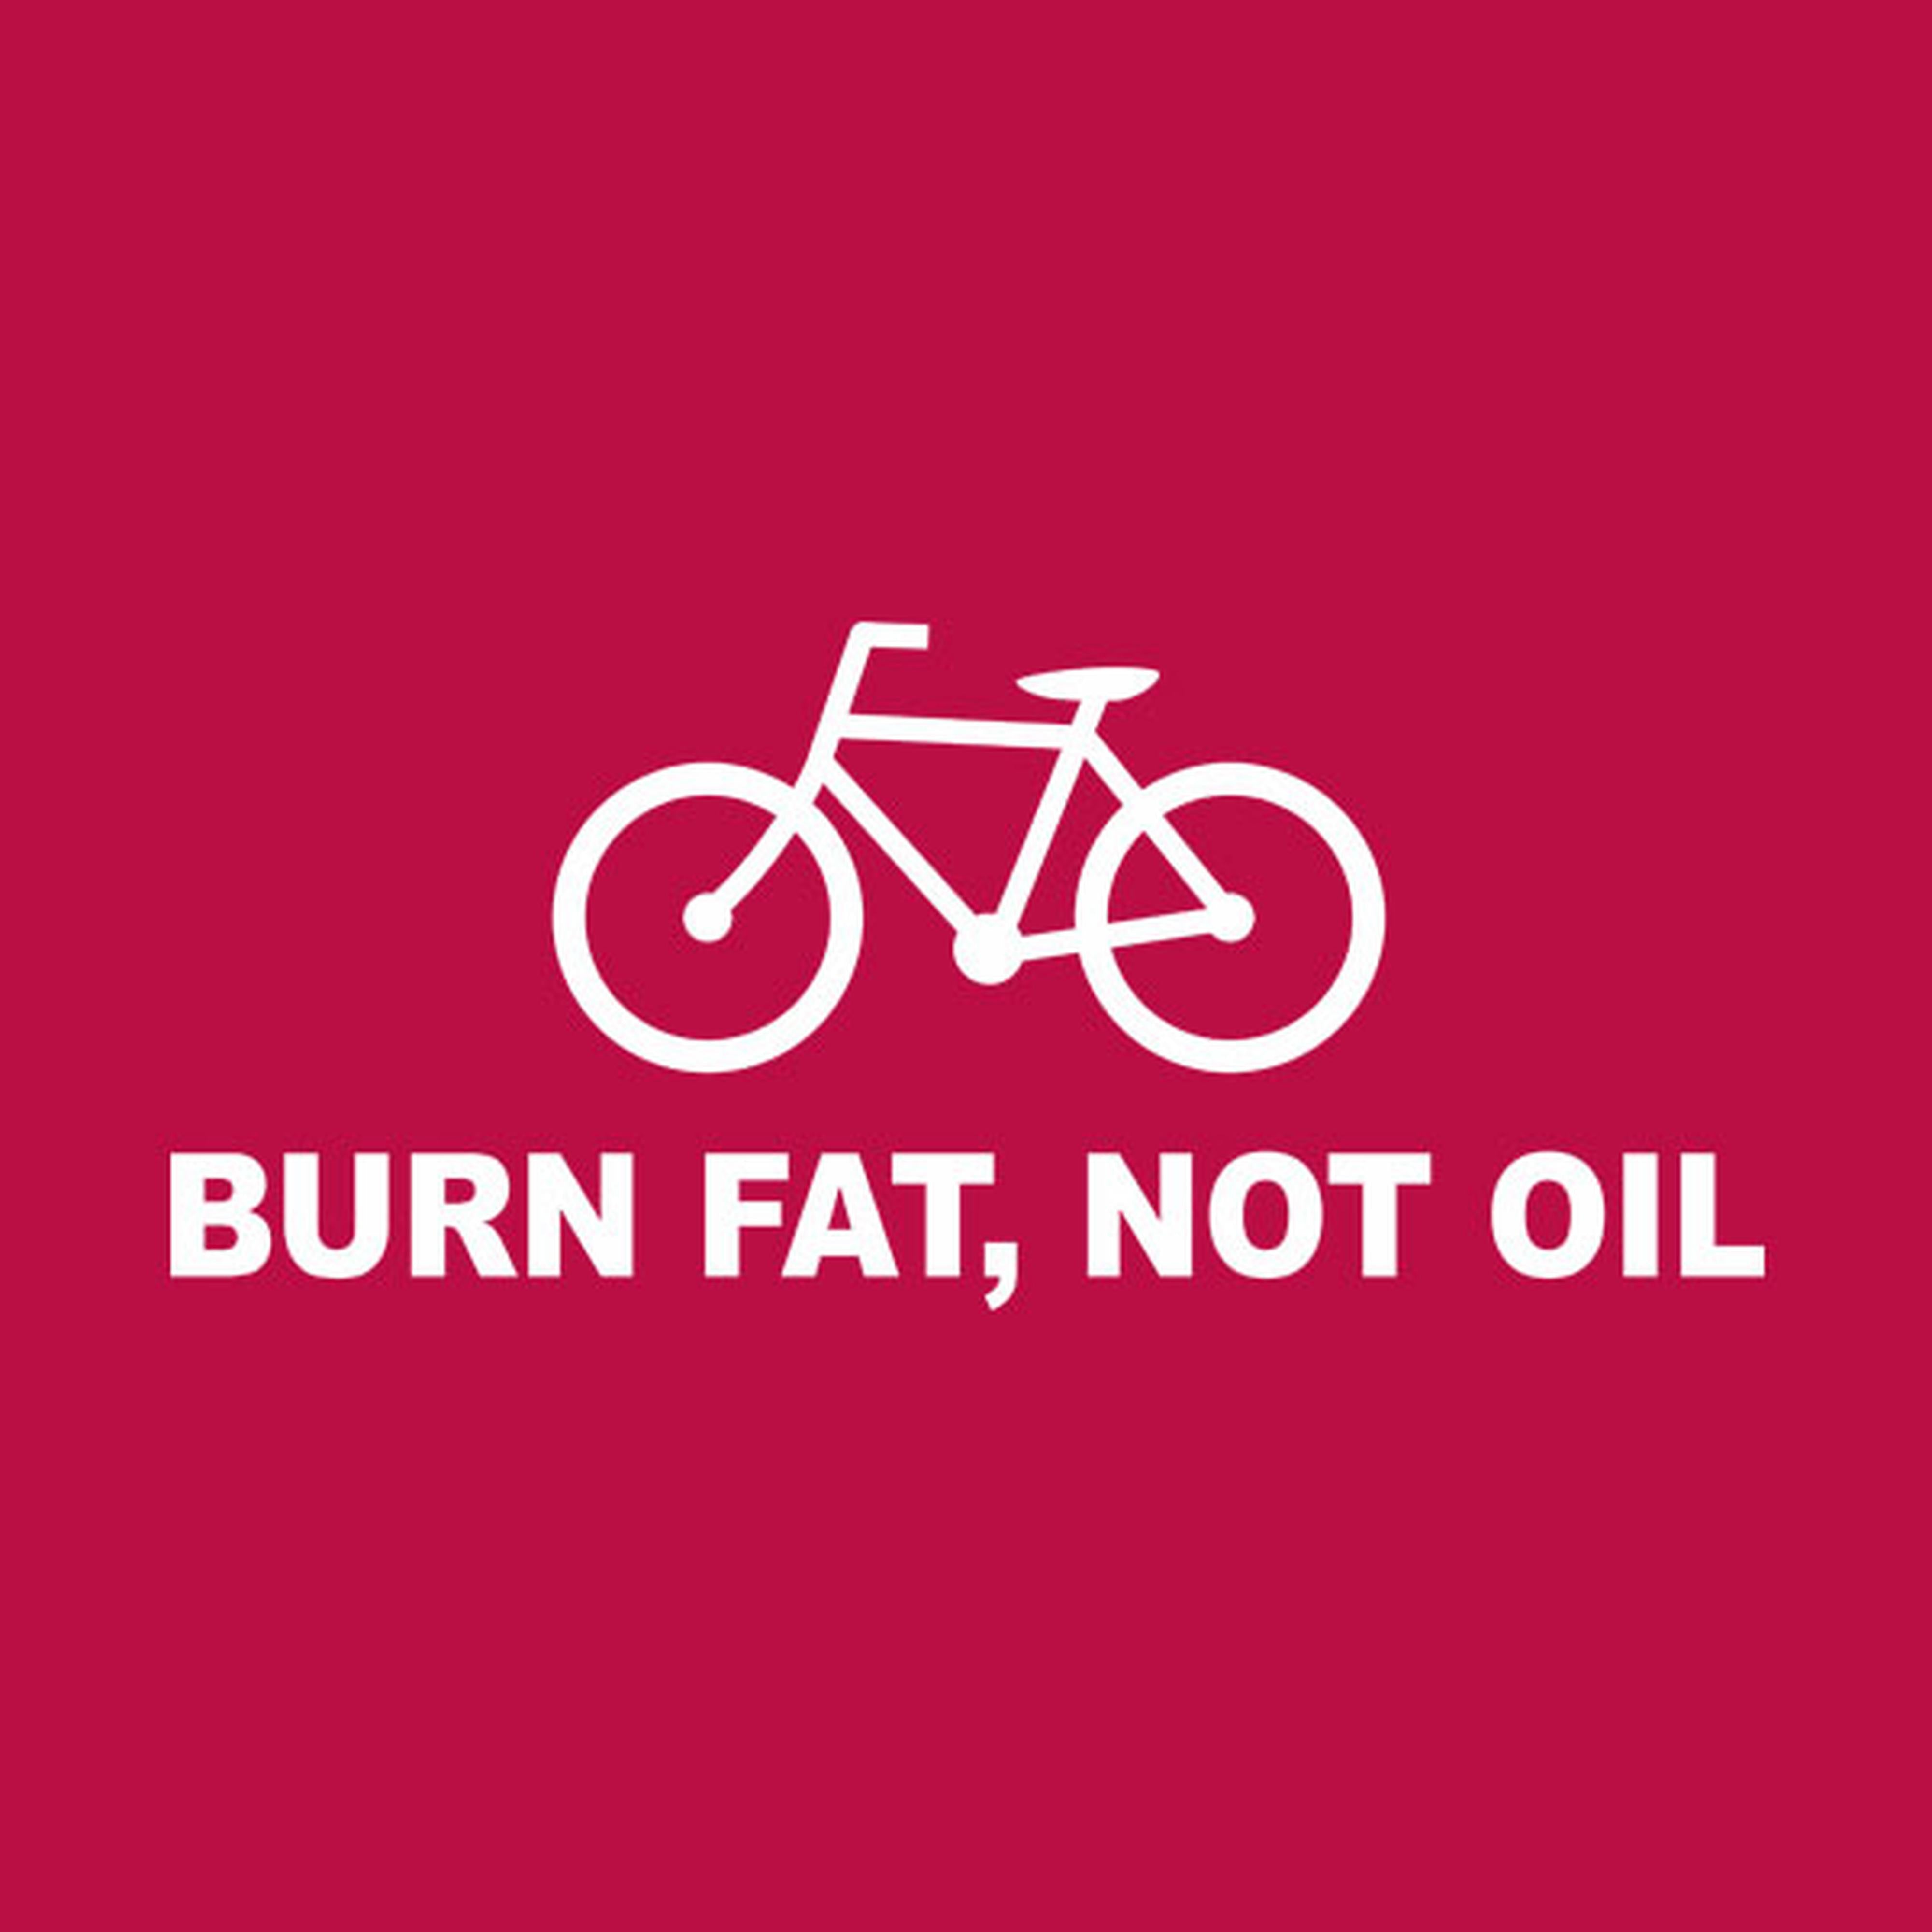 Burn fat, not oil - cycling T-shirt